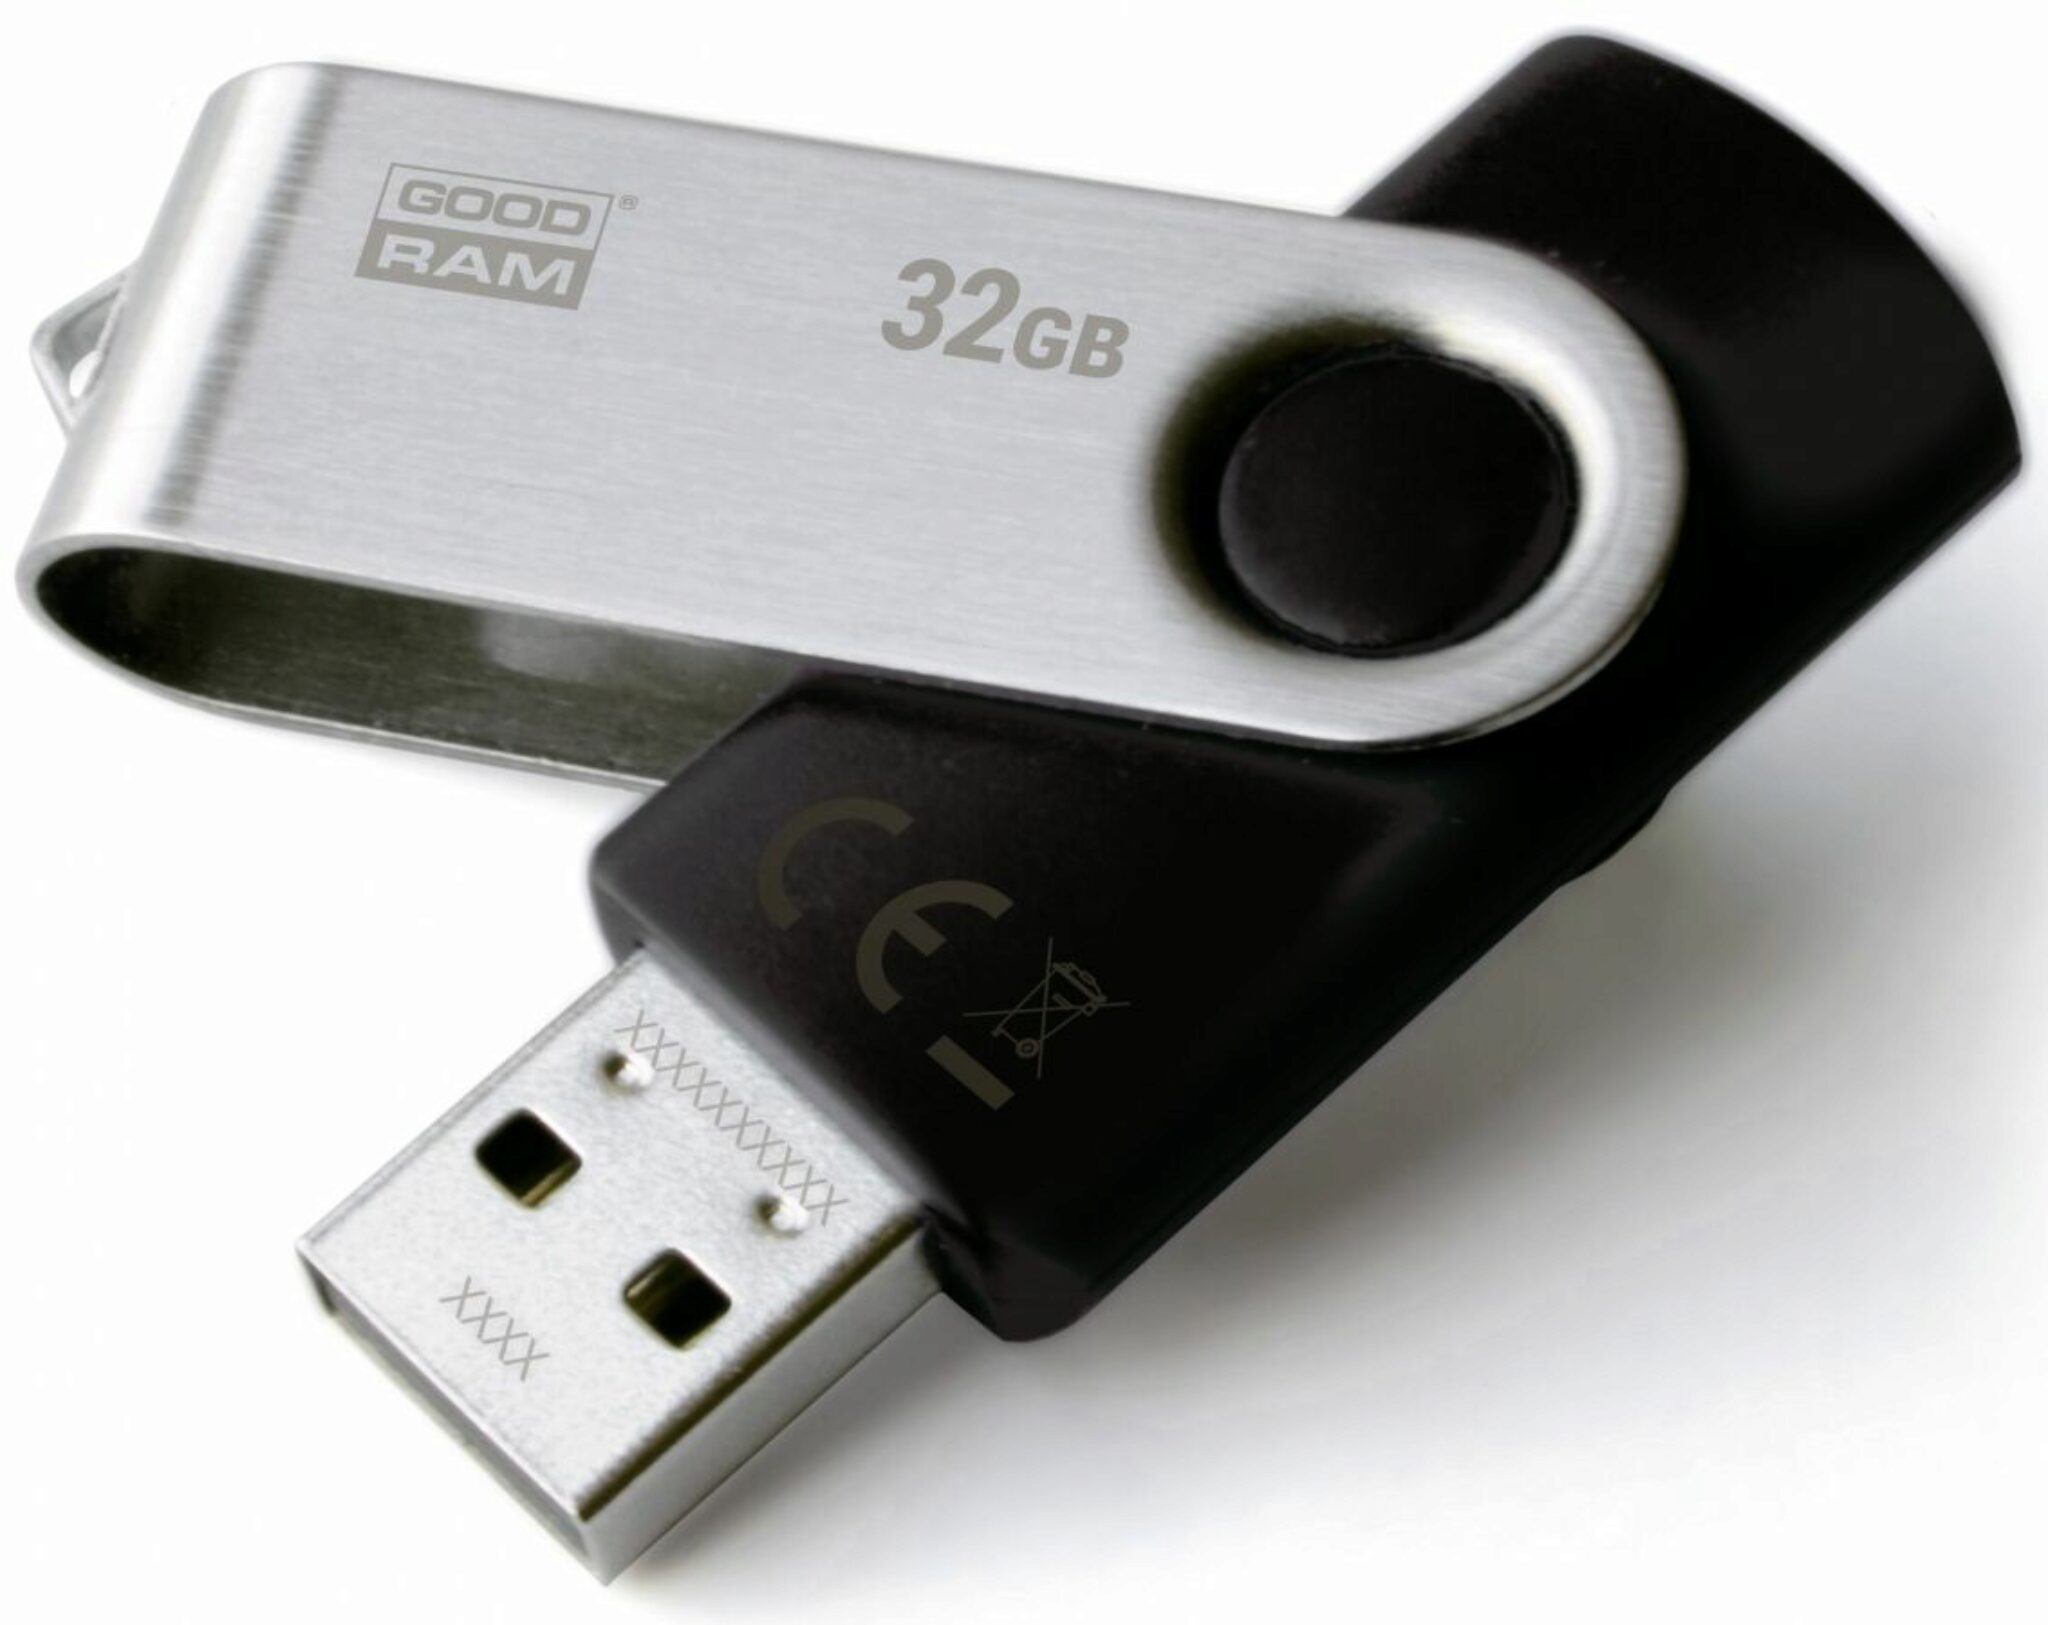 Formater Des Clés USB Sous Linux